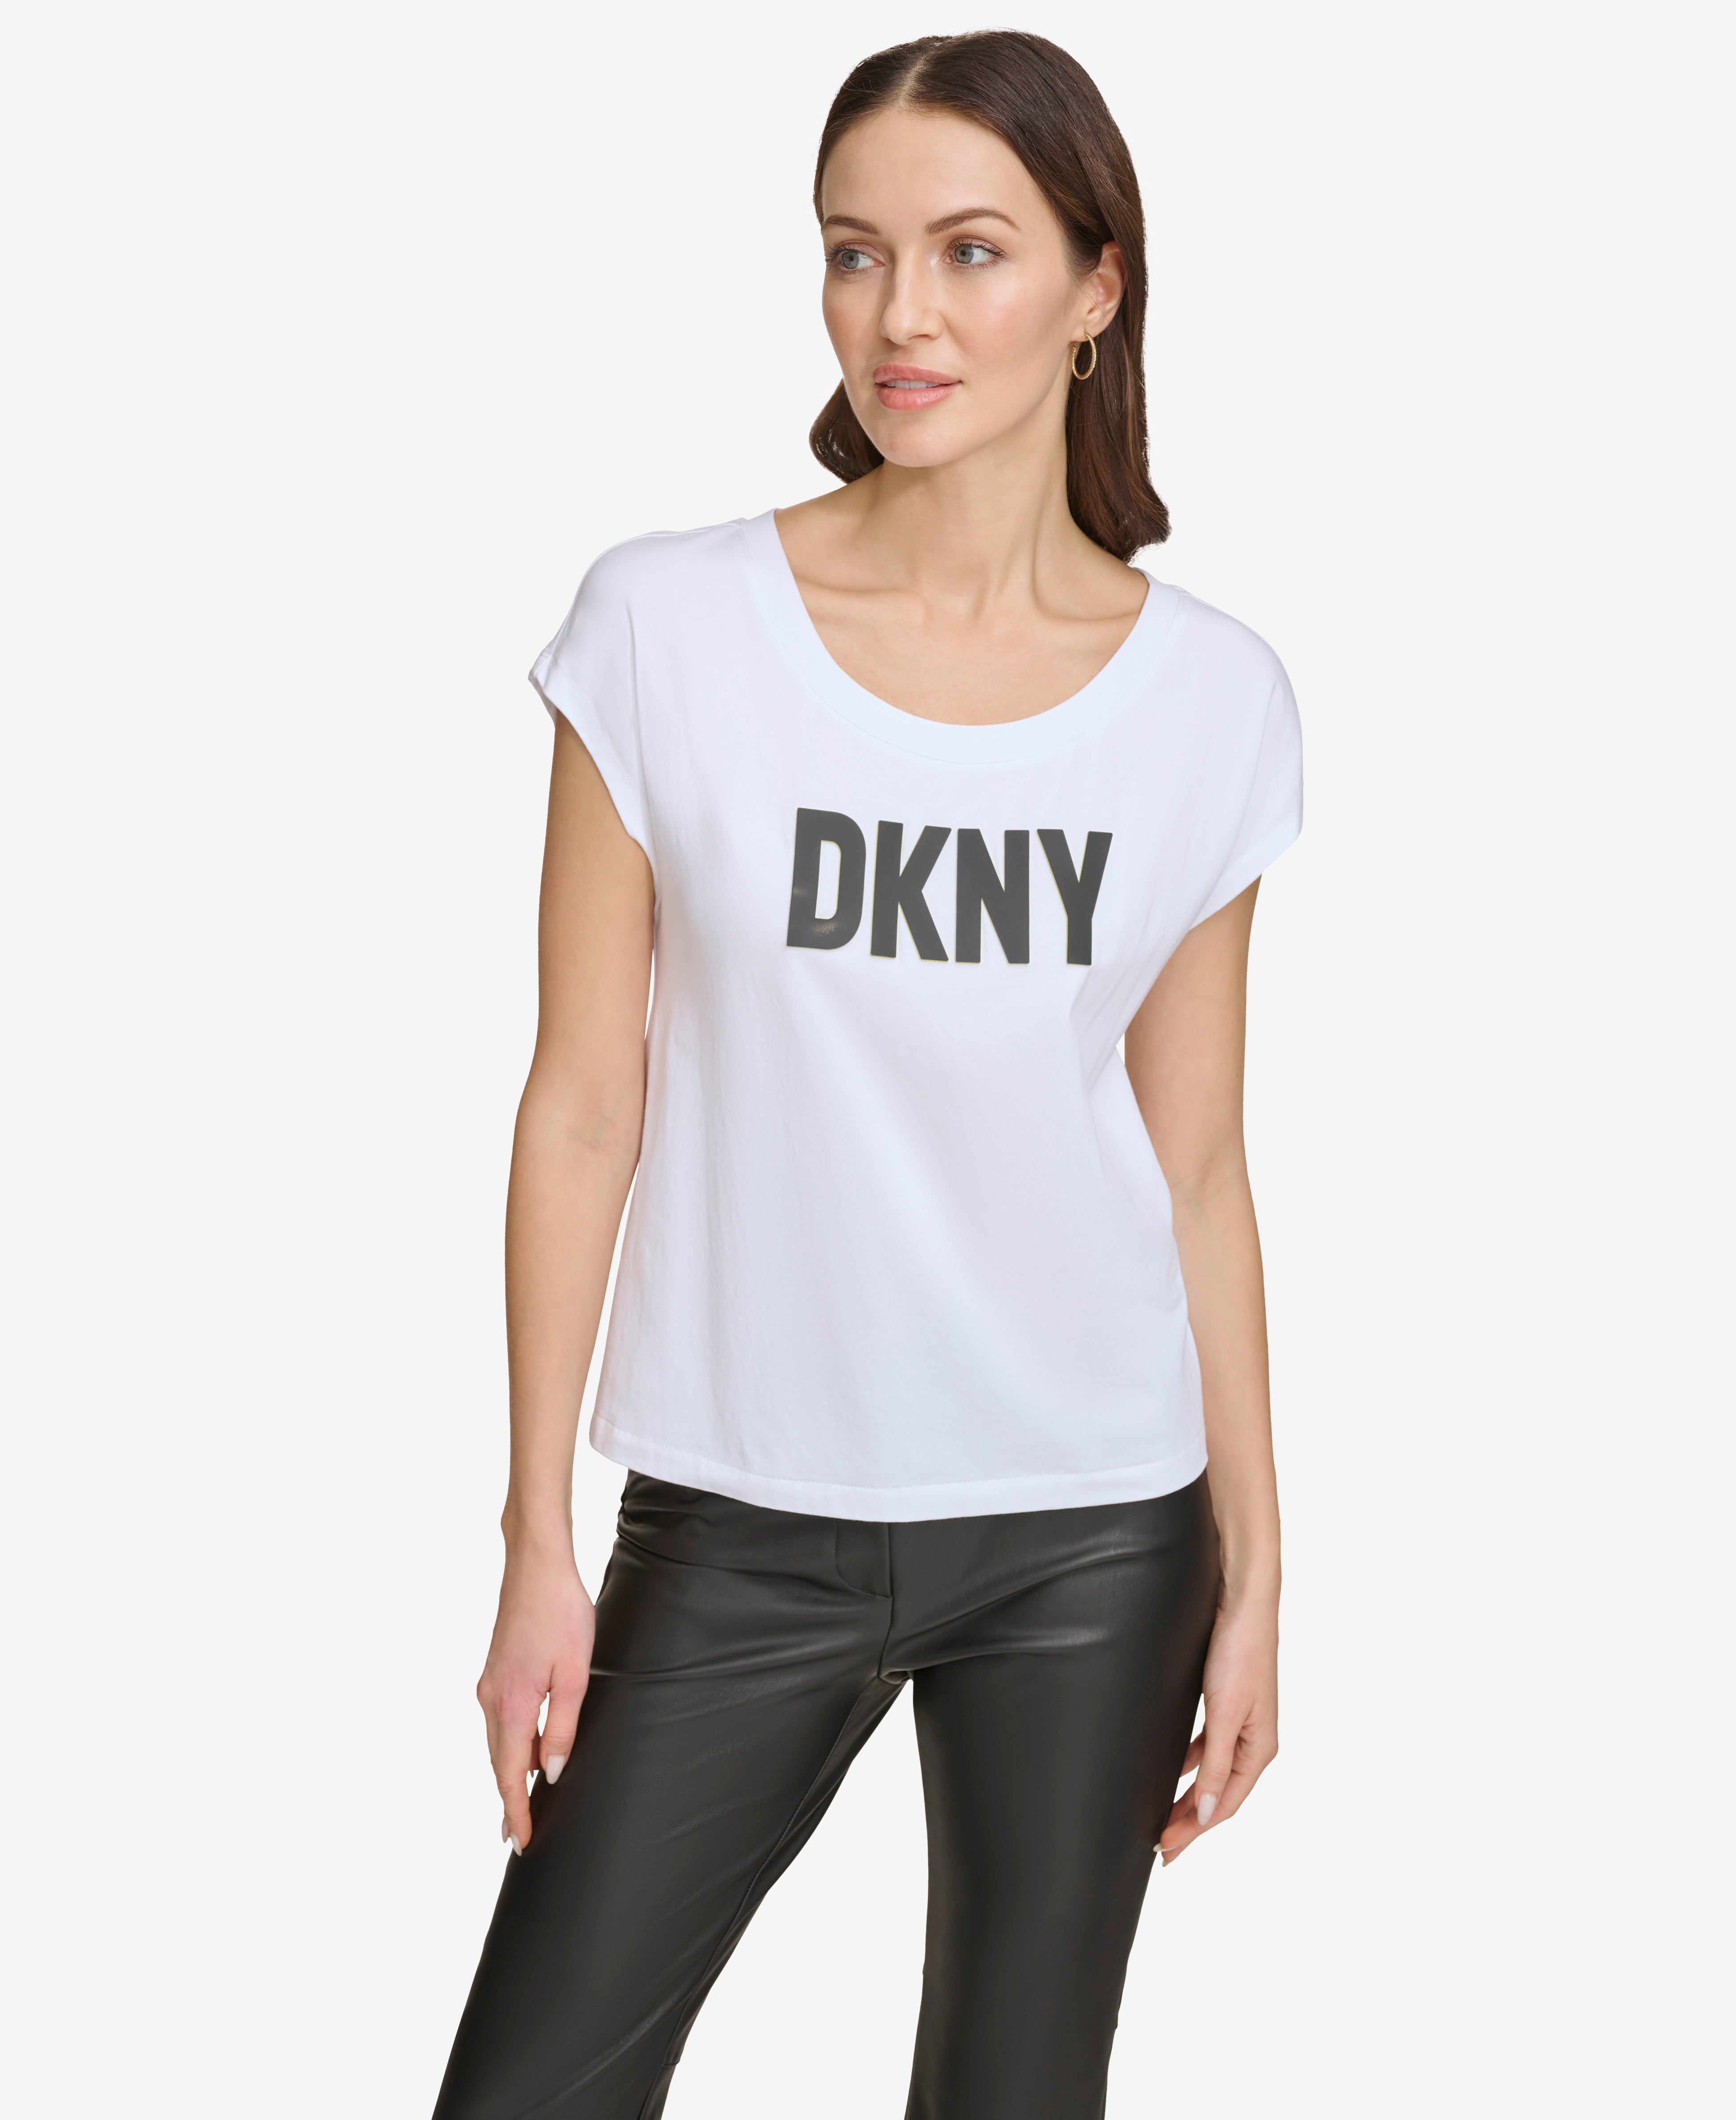 DKNY RAISED LOGO T-SHIRT,White